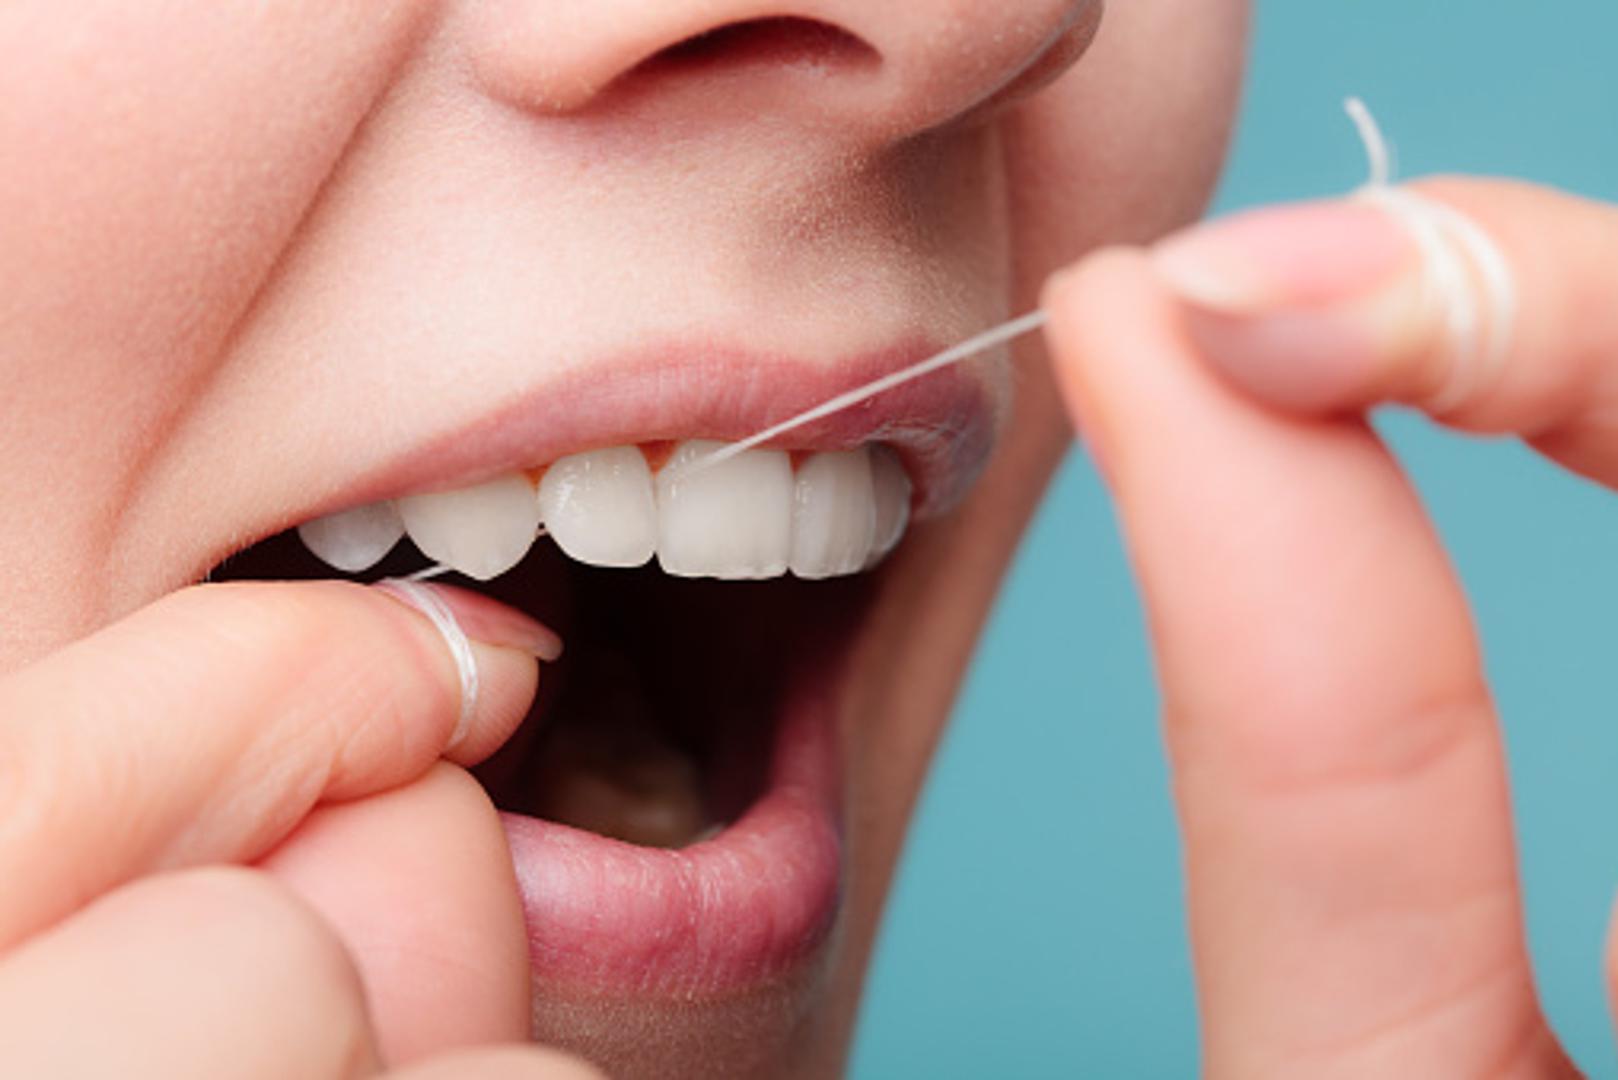 Ne koristite zubni konac? Trebali biste to uvrstiti u svakodnevnu naviku jer na taj način smanjujete broj bakterija u ustima, a upala zubnog mesa može uzrokovati zdravstvene probleme koji mogu skratiti život. 